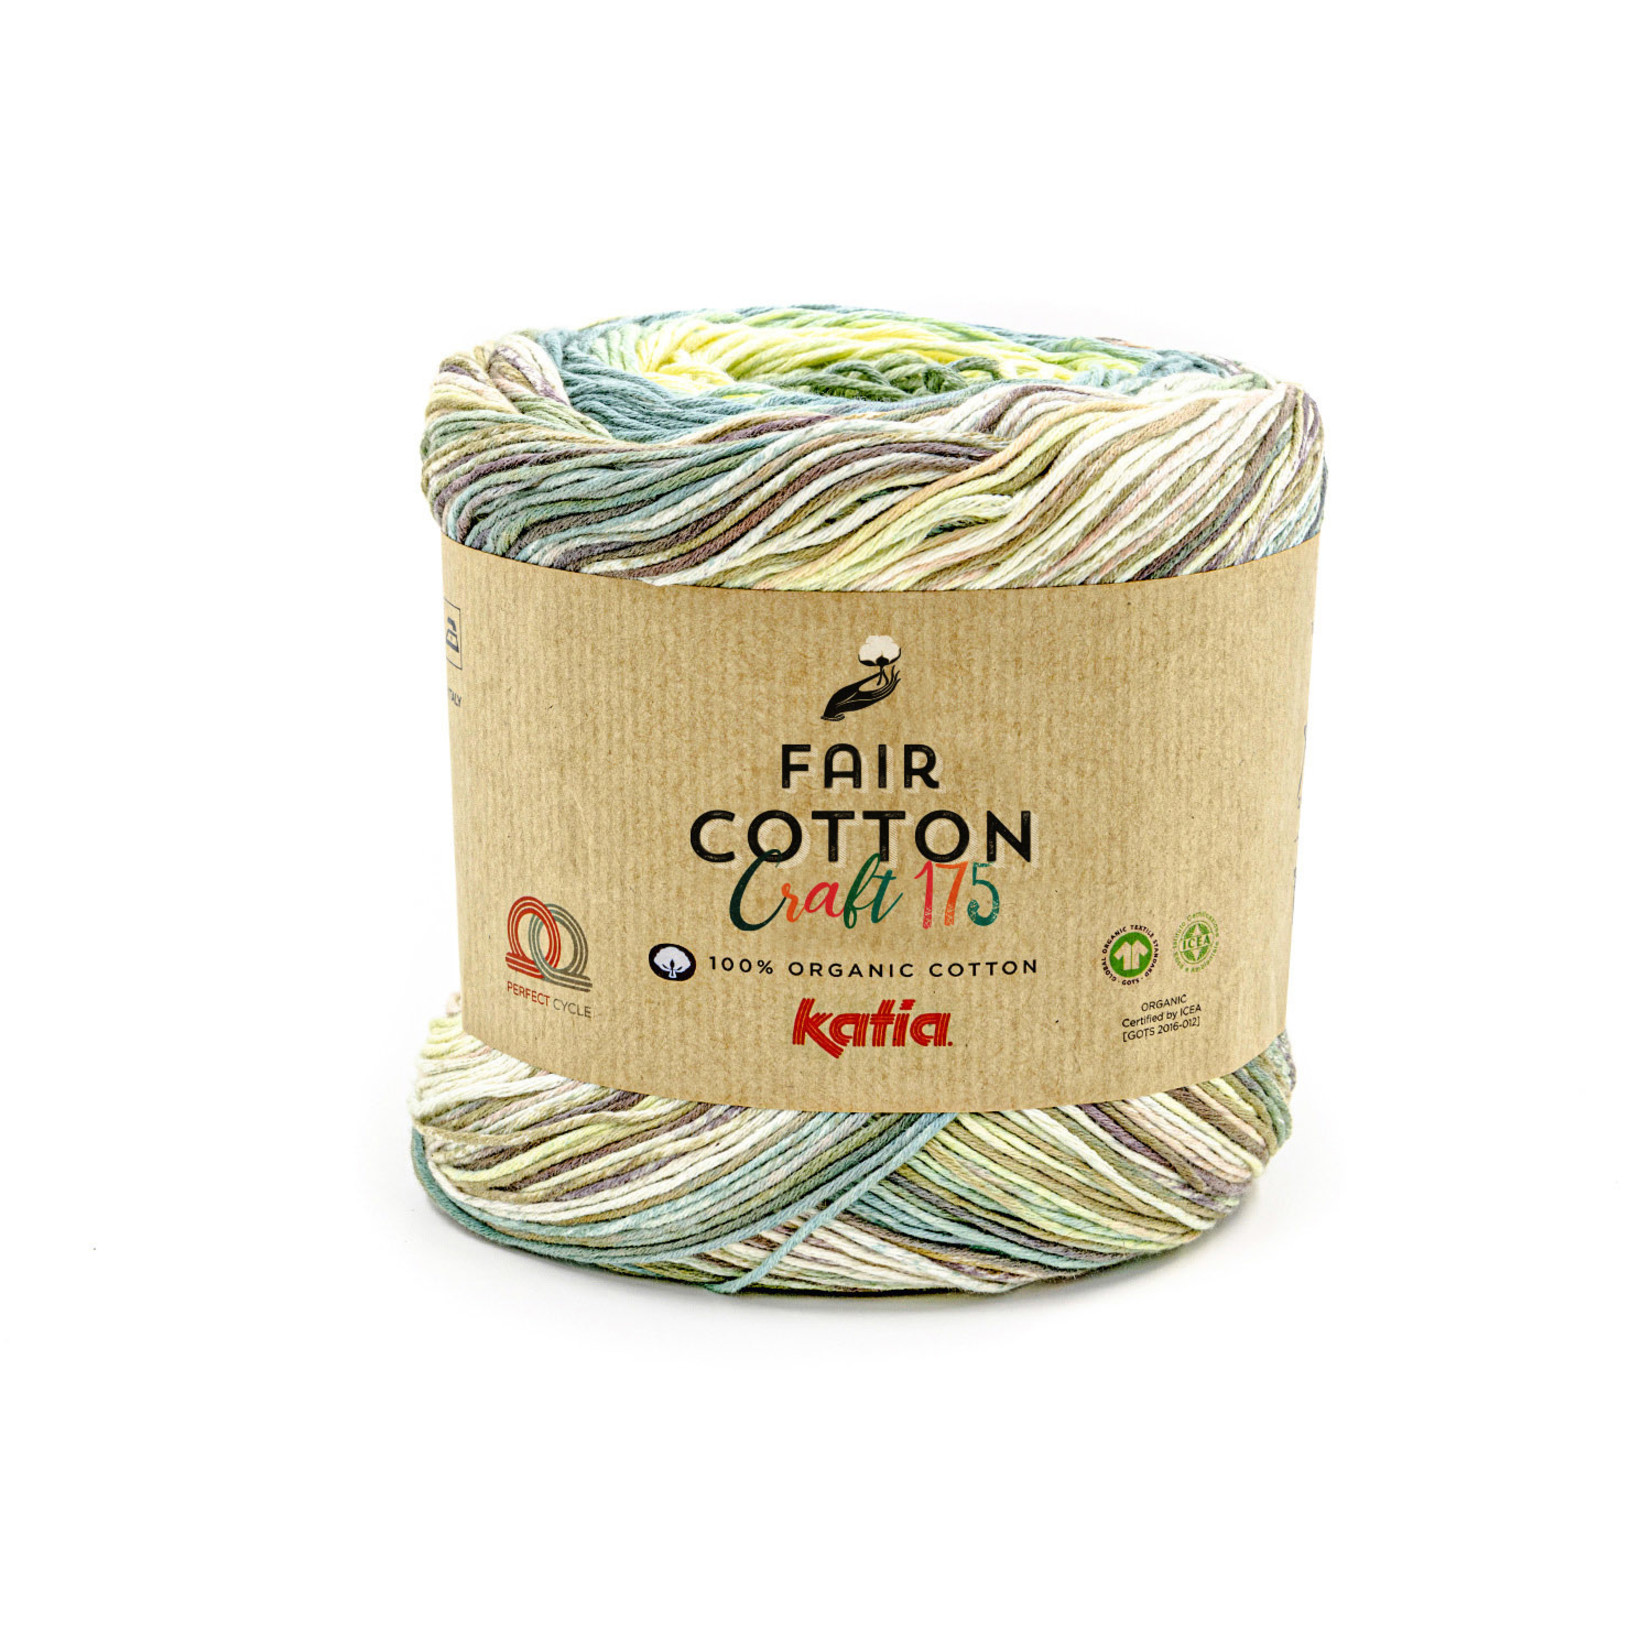 Katia Katia Fair Cotton Craft 175 (-20% kortng!)